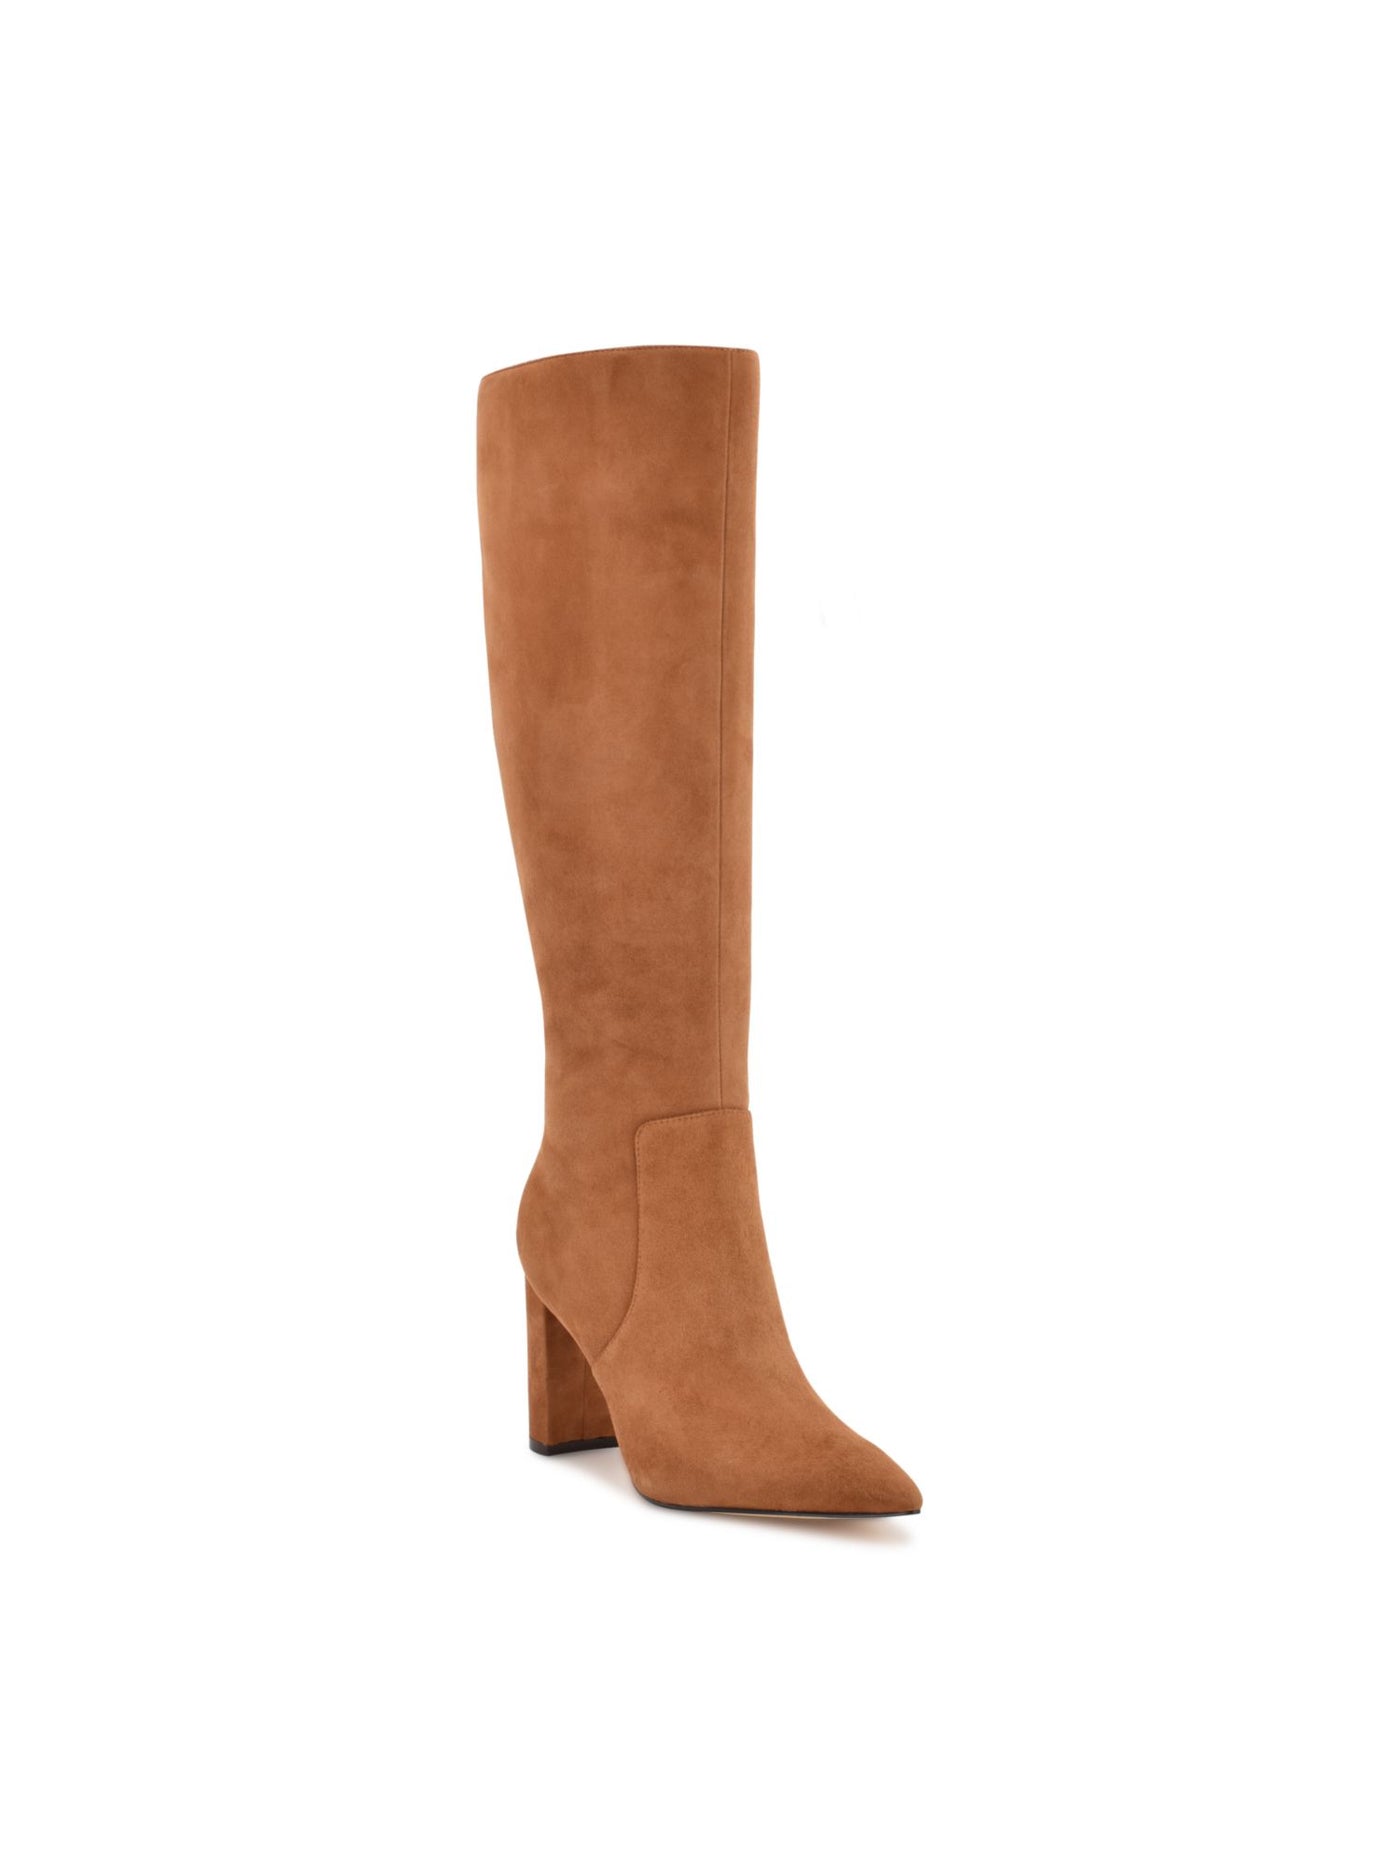 NINE WEST Womens Beige Comfort Danee Pointed Toe Block Heel Zip-Up Leather Dress Boots 8 M